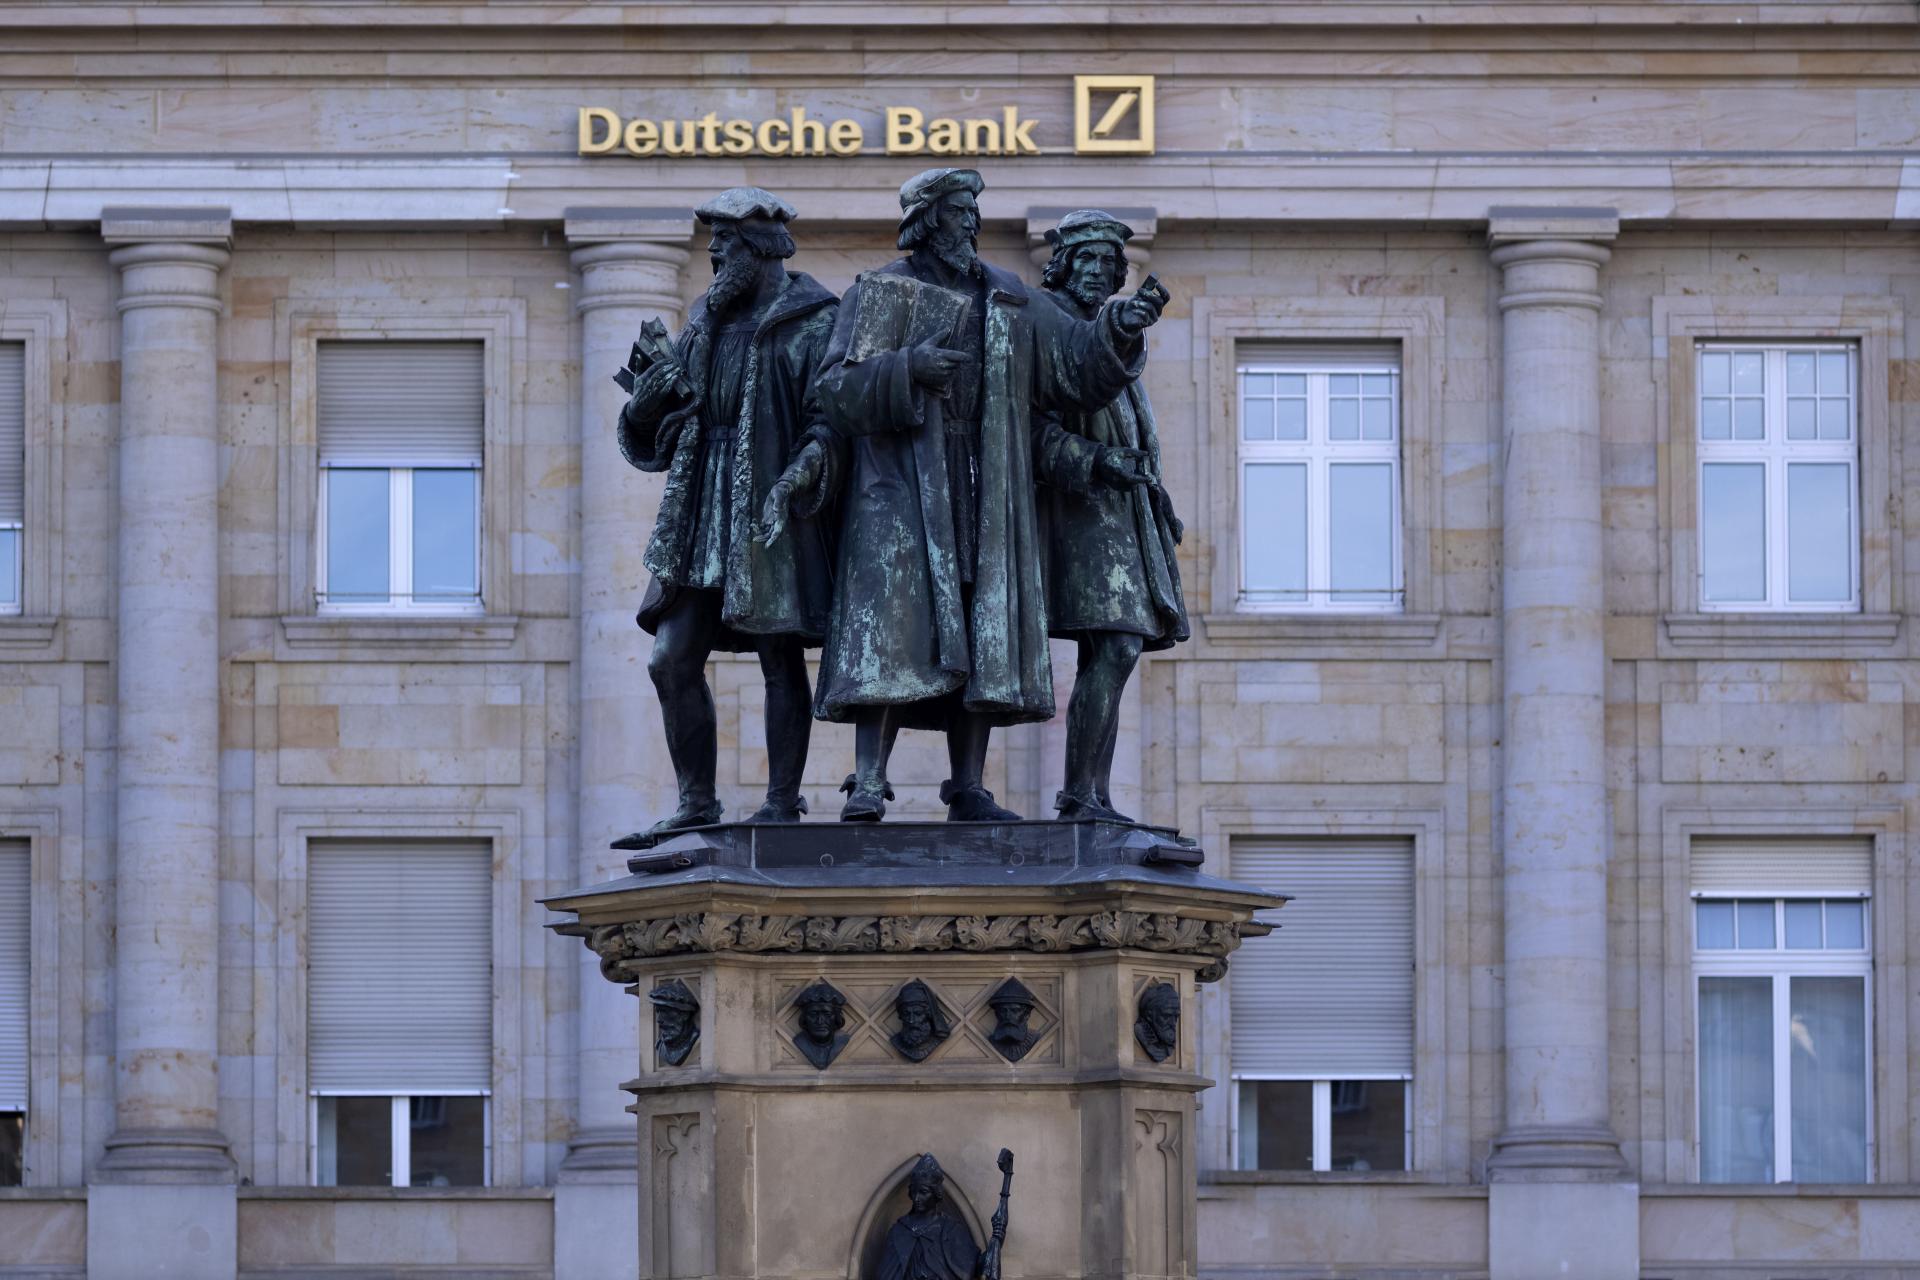  Německo banky firmy Deutsche_Bank 1.čtvrtletí 